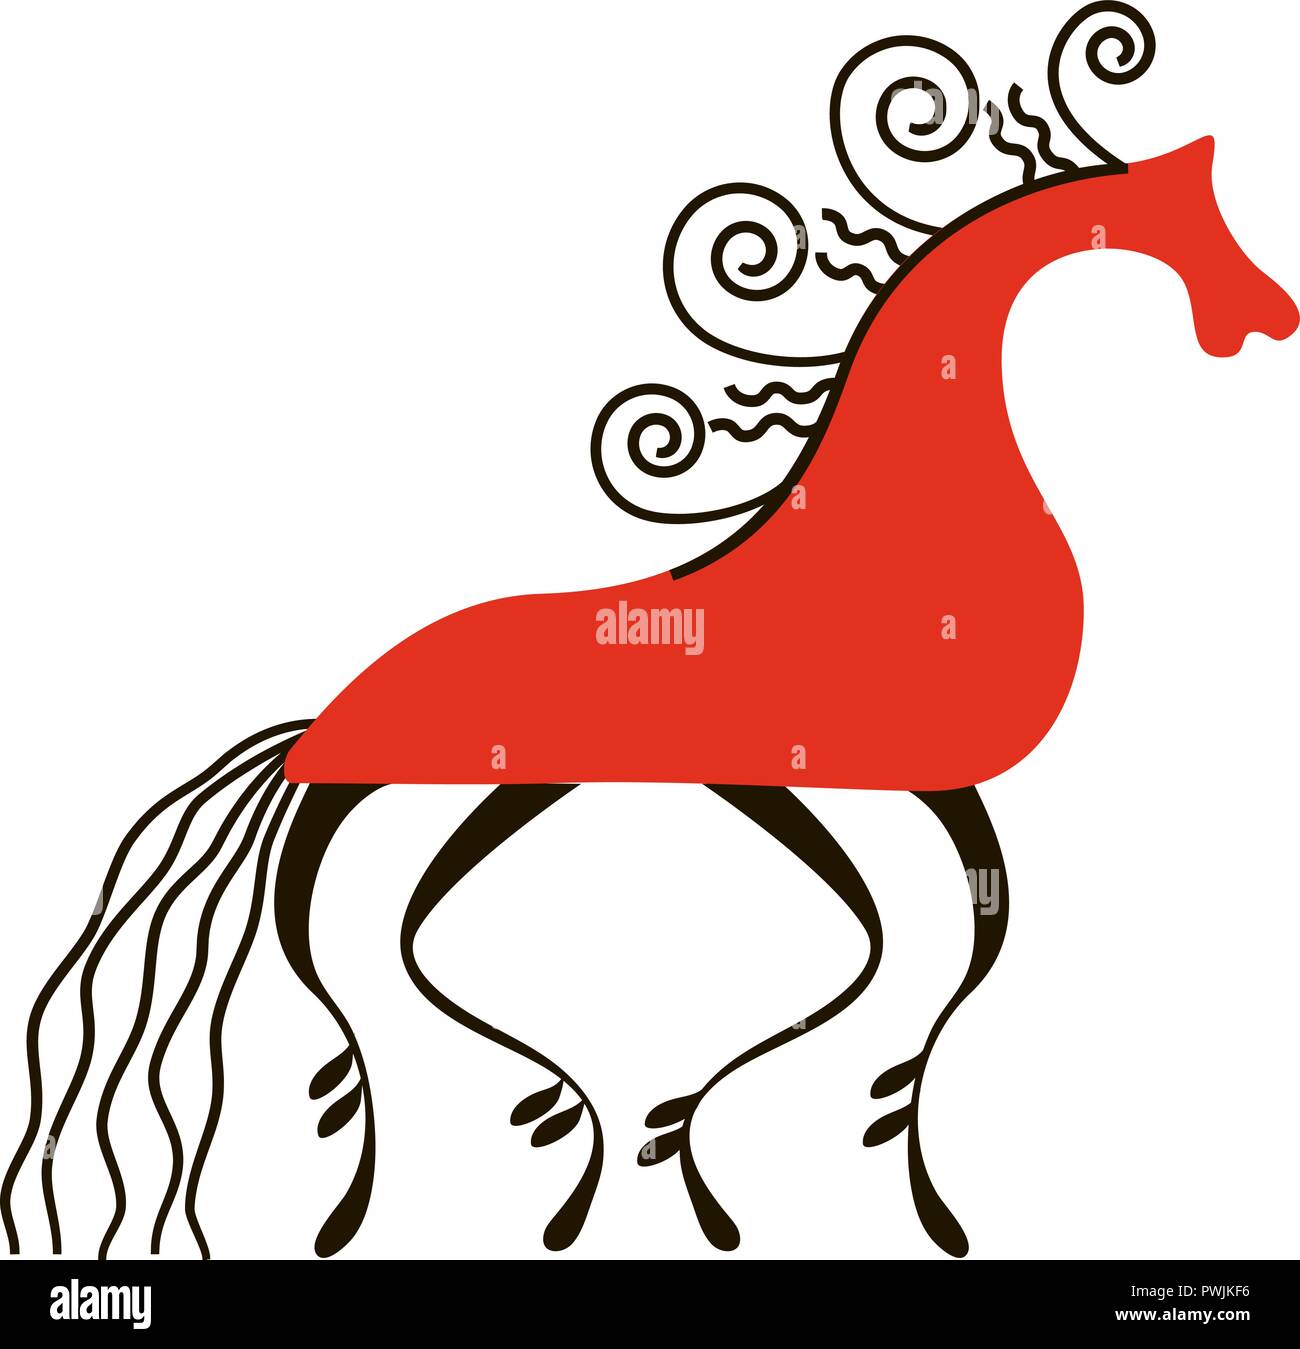 Red Horse. Peintures du nord national. L'artisanat folklorique. Ornements d'origine enchanteresse. La simplicité. télévision, Hackney, dobbin , mount, étalon, mare pour Illustration de Vecteur